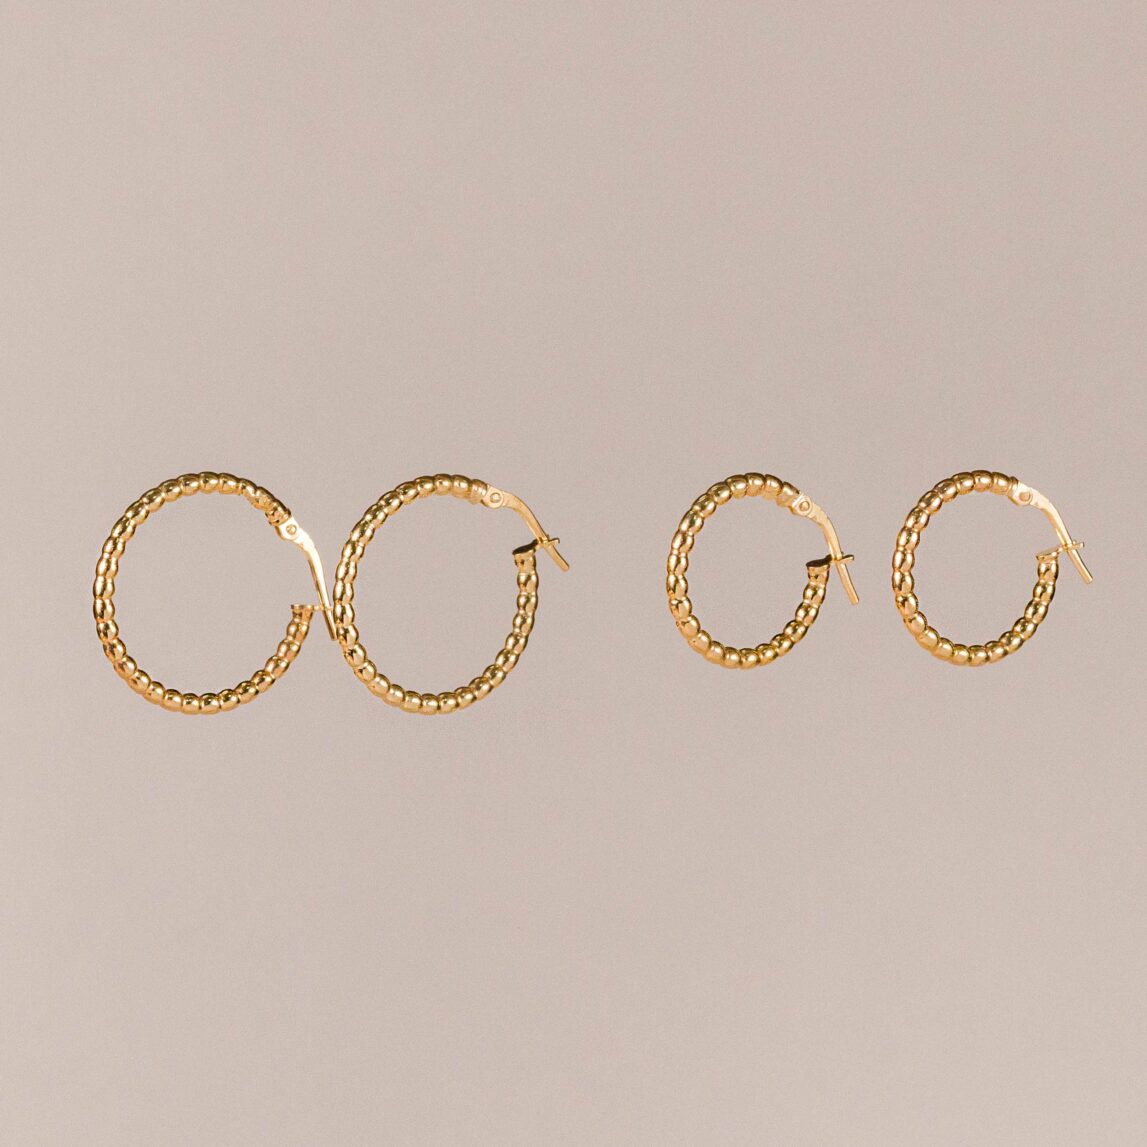 Los Pendientes Aro Paola se convertirán en un accesorio imprescindible en tu colección de joyería. Son unas preciosas criollas doradas.